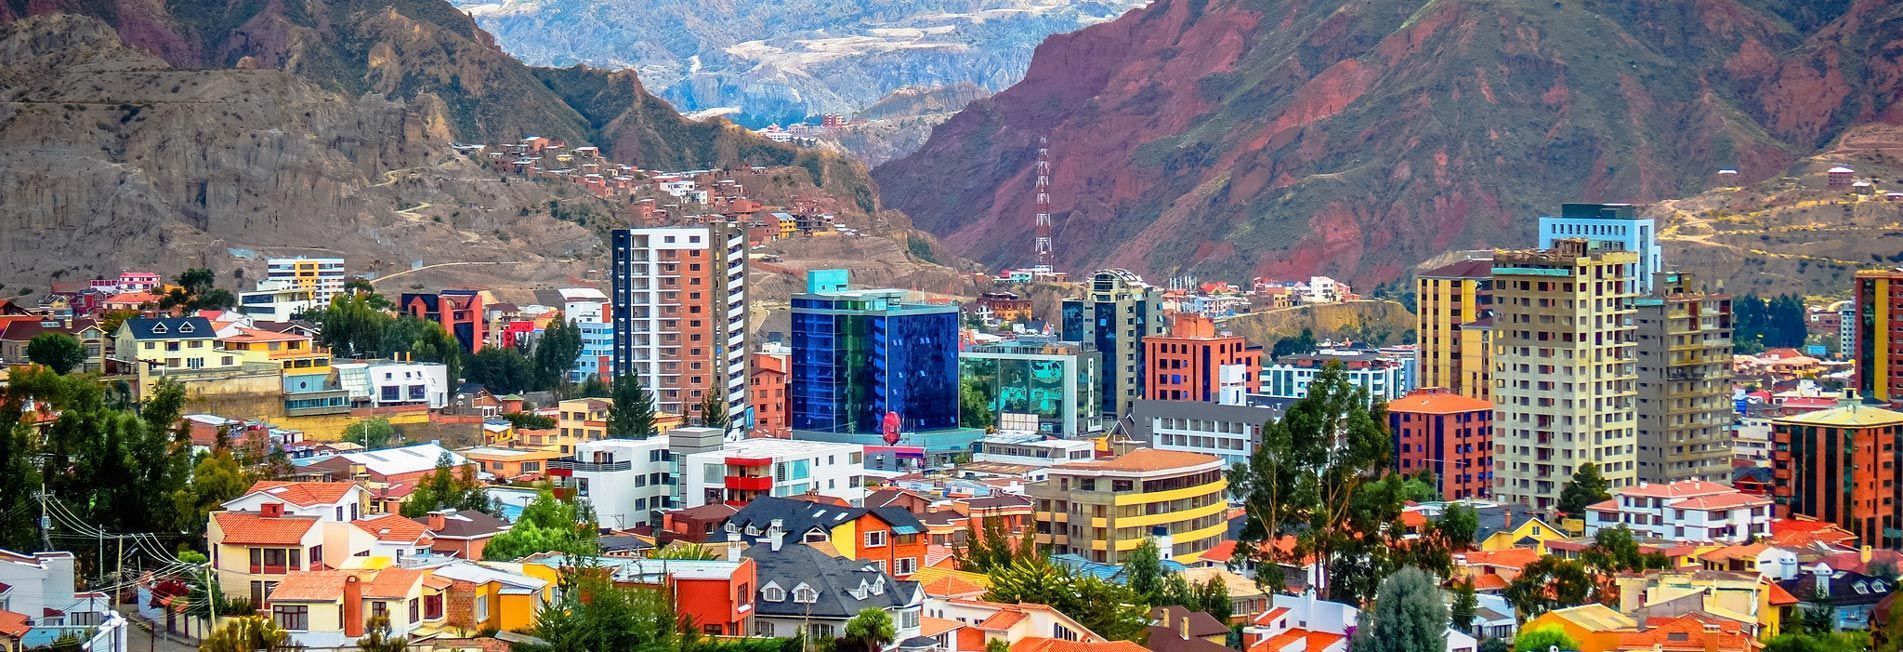 Free Walking Tour La Paz Bolivia | Tours Gratuitos caminando